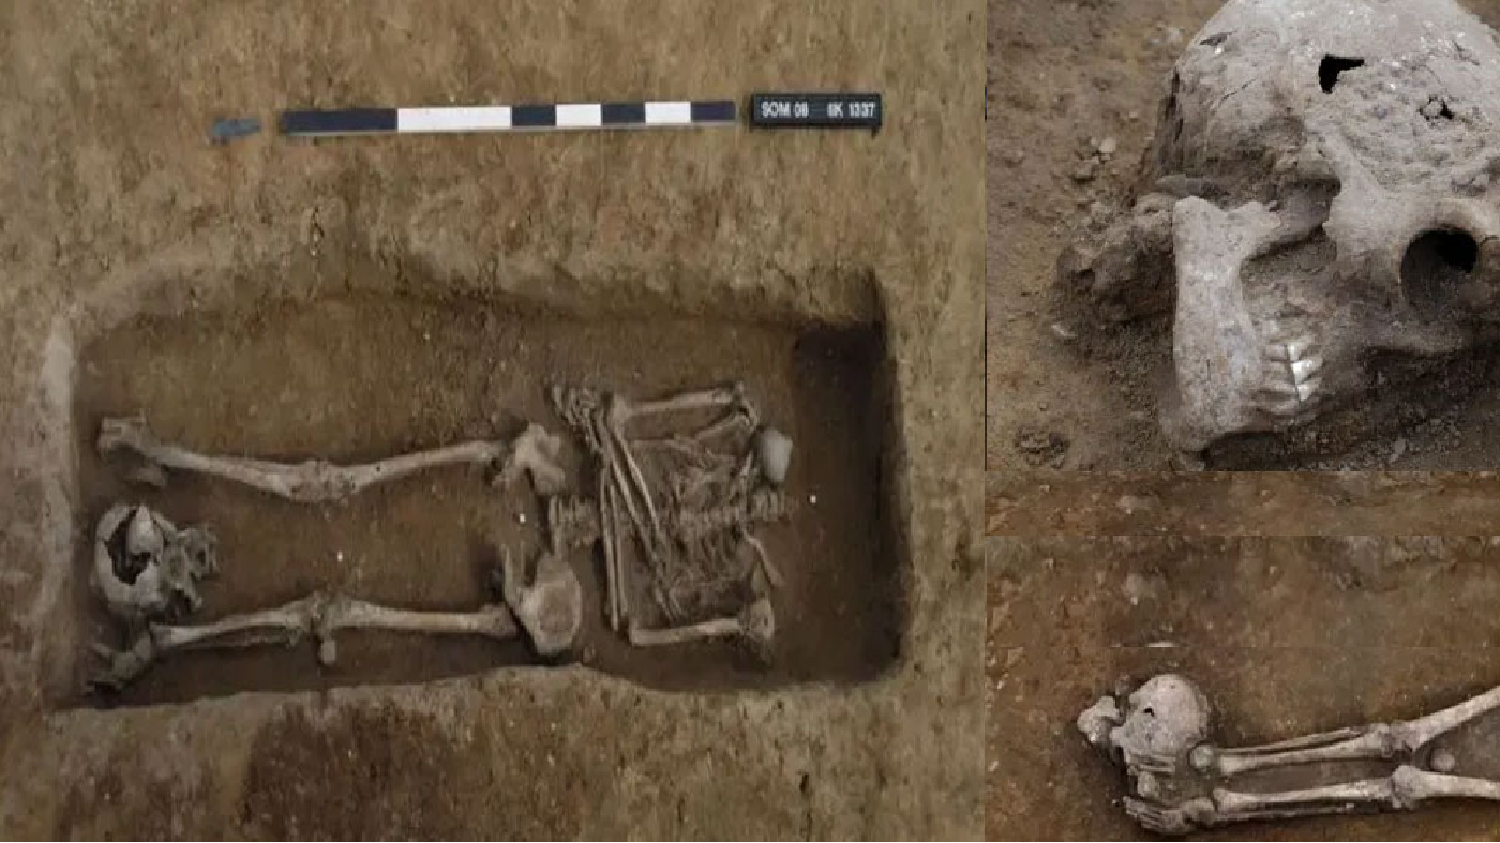 British Romans: UK में करीब 2 हजार साल पुराने कंकाल बरामद, 17 के सिर थे गायब; जानें एक्सपर्ट का दावा